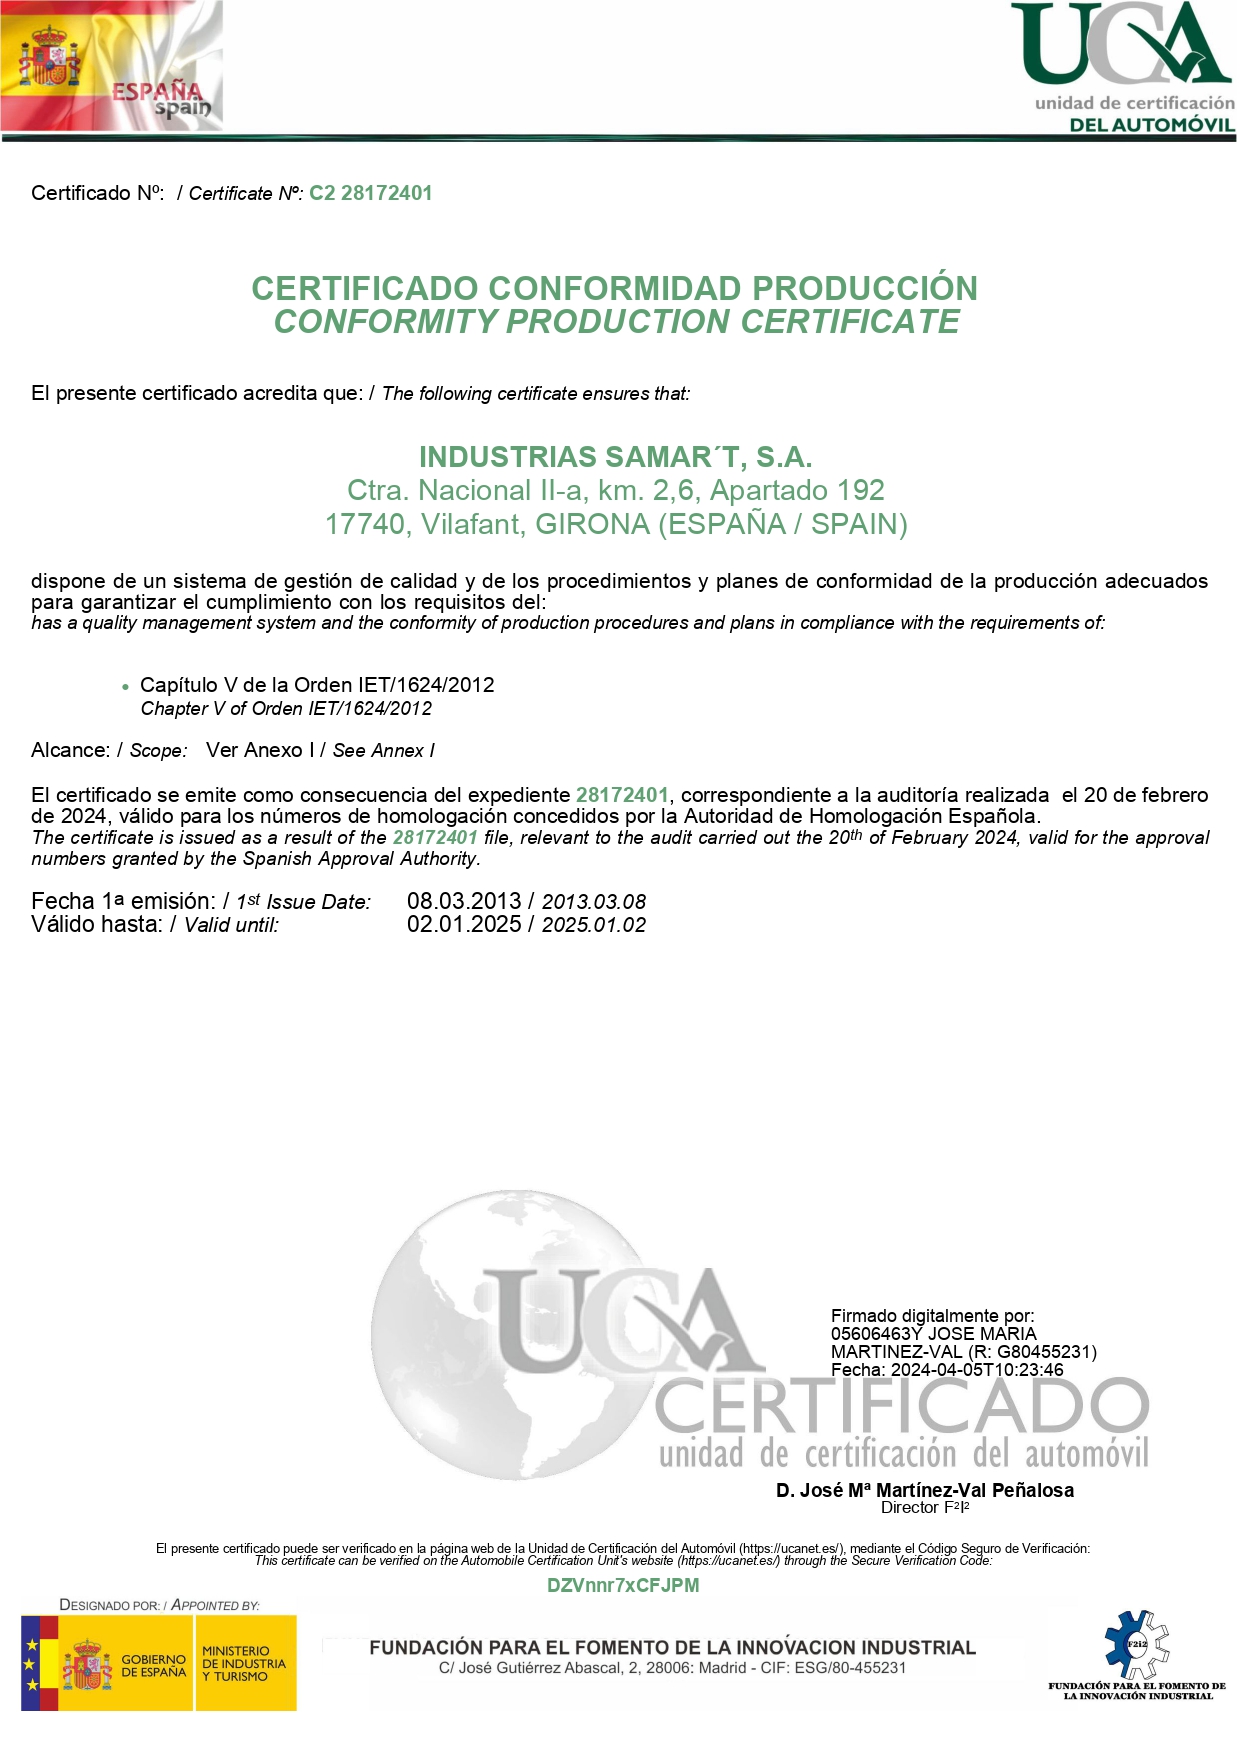 Certificado Conformidad Producción UCA Samar't